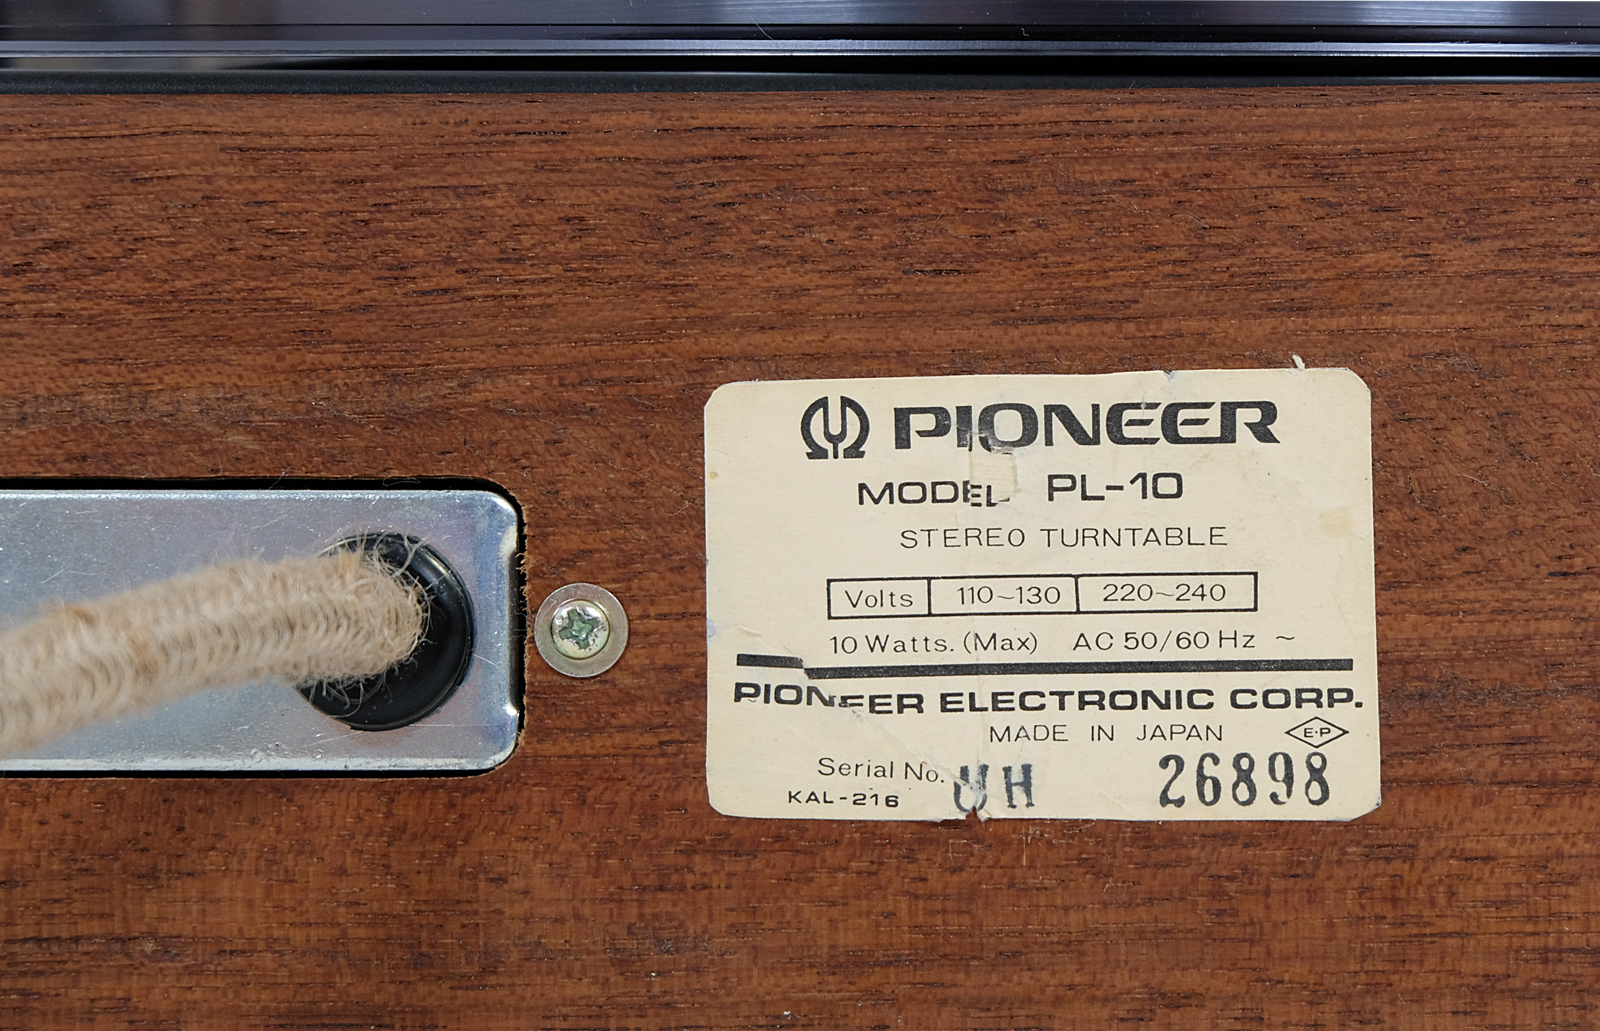 Pioneer PL-10 turntable